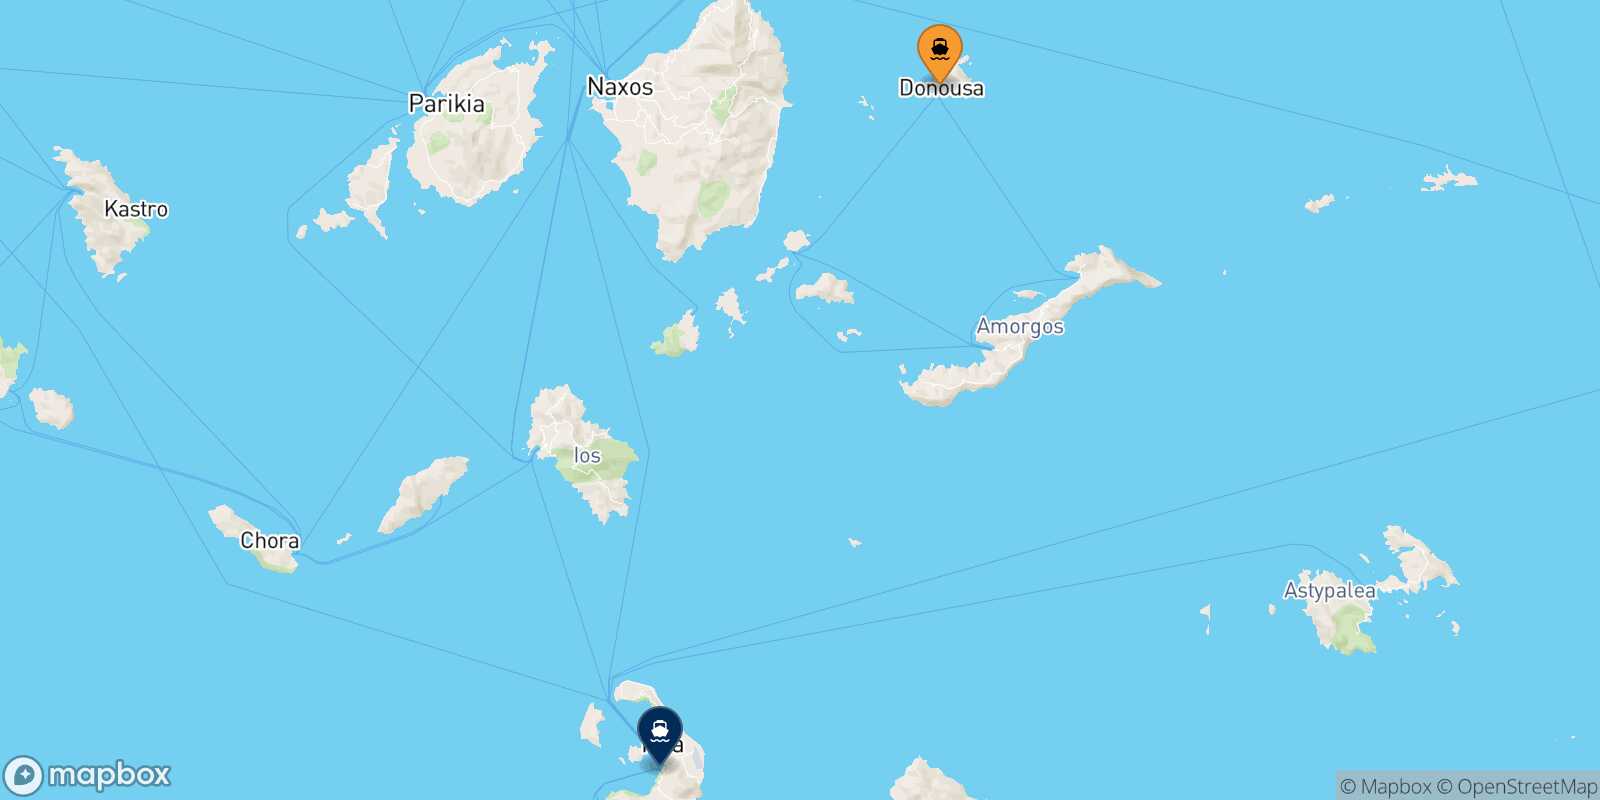 Donoussa Thira (Santorini) route map